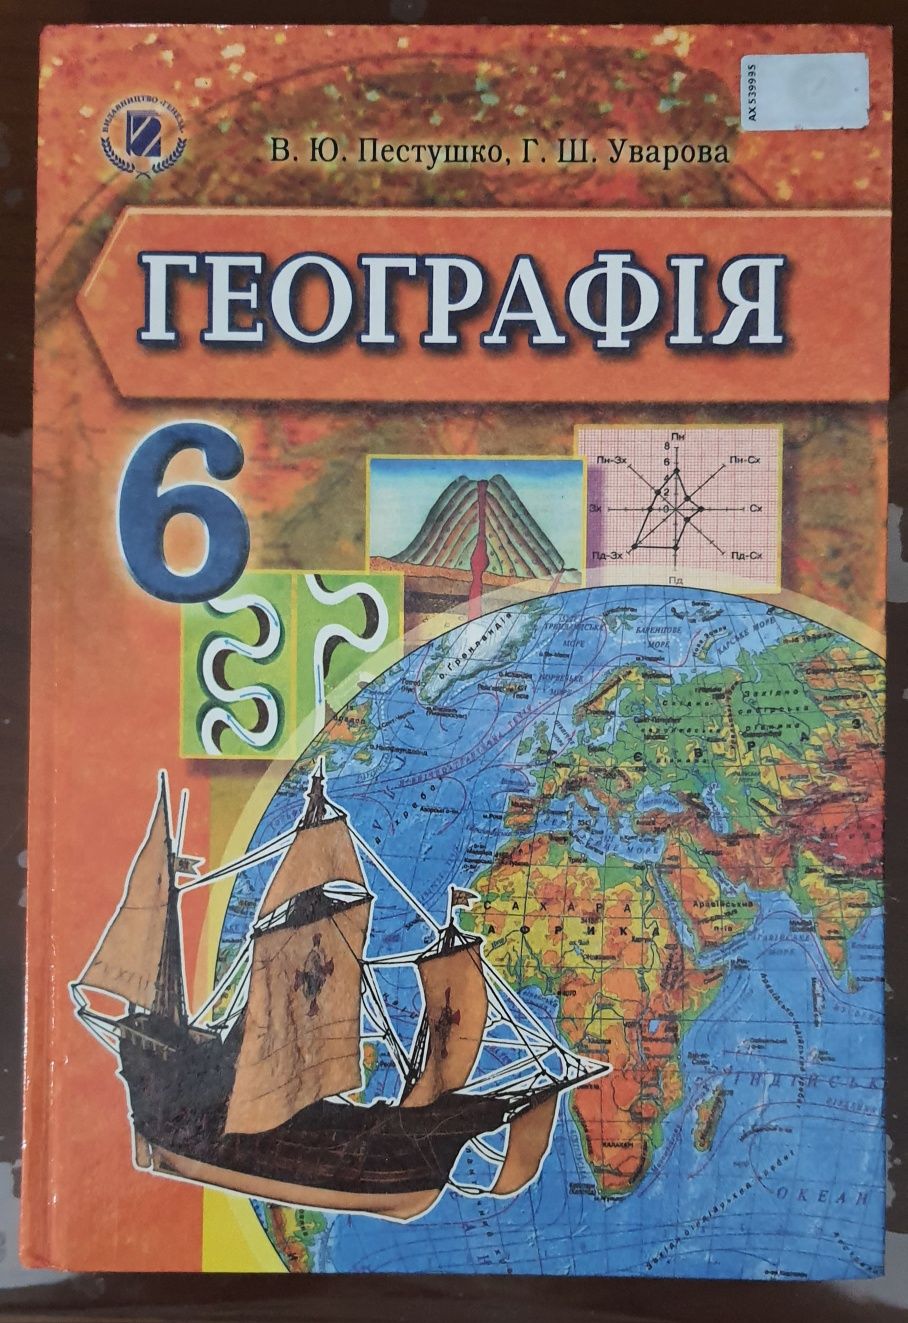 Підручник "Географія", 6 клас, Пестушко В.Ю.